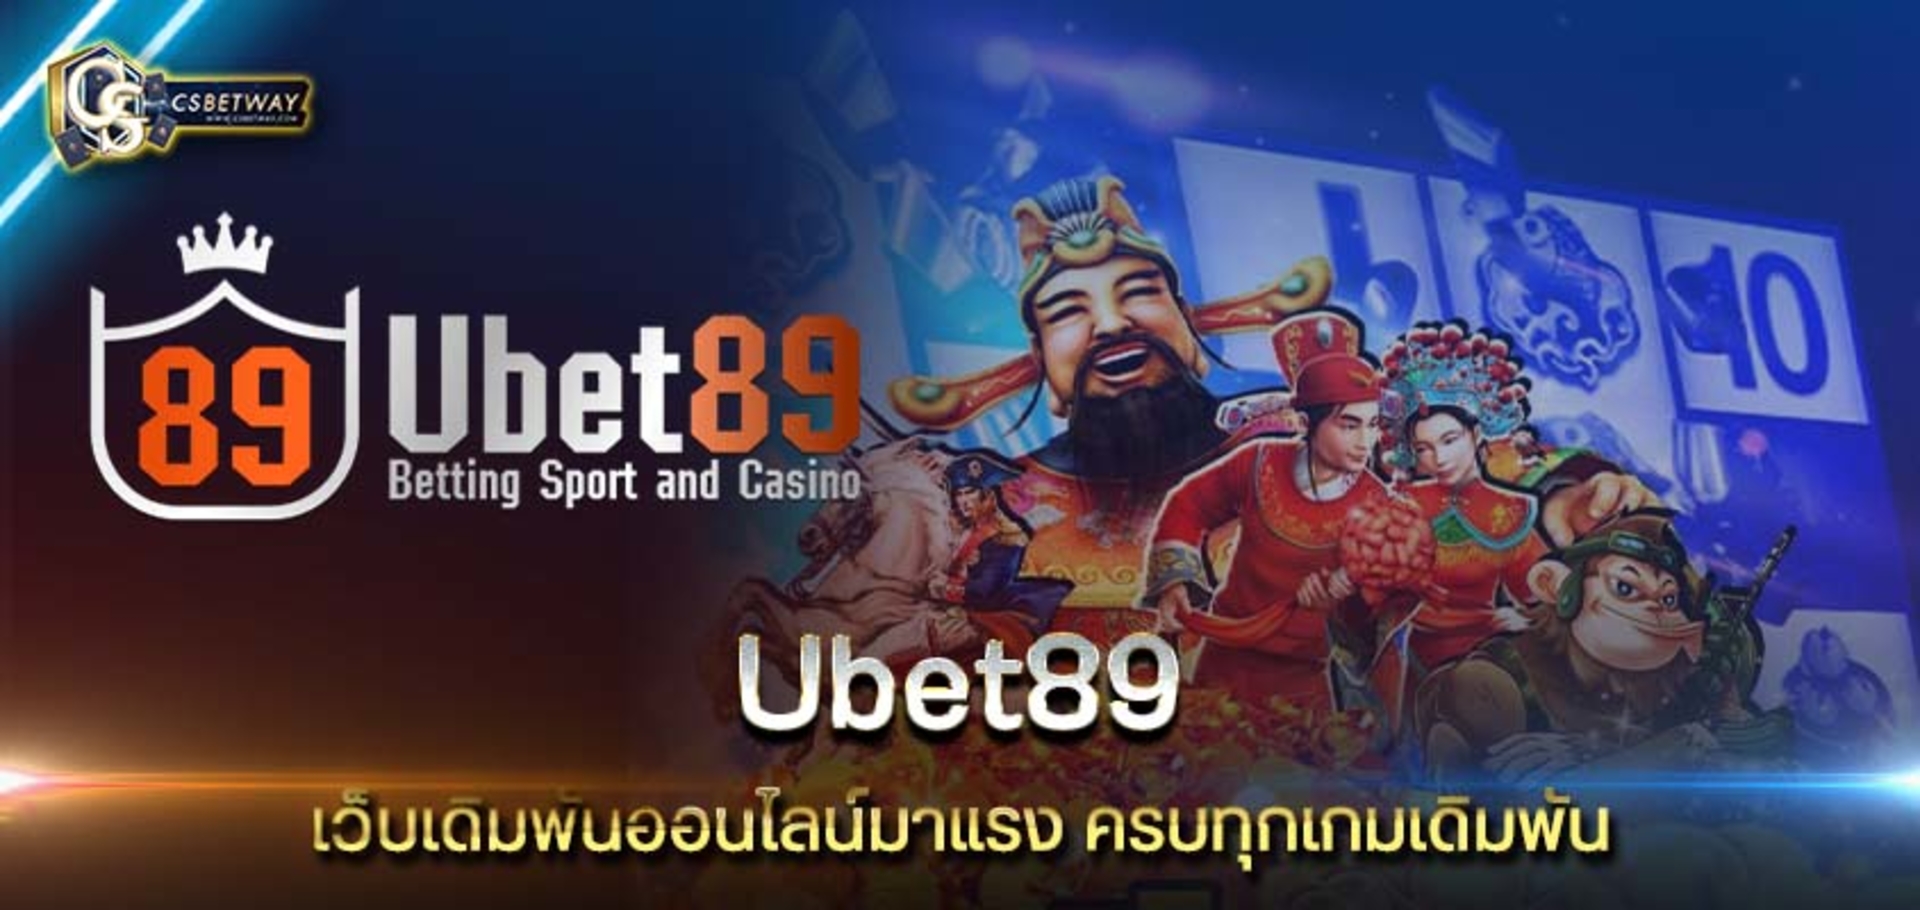 Ubet89 เว็บเดิมพันออนไลน์มาแรง Ubet89 ครบทุกเกมเดิมพัน สมัครง่าย จ่ายจริง